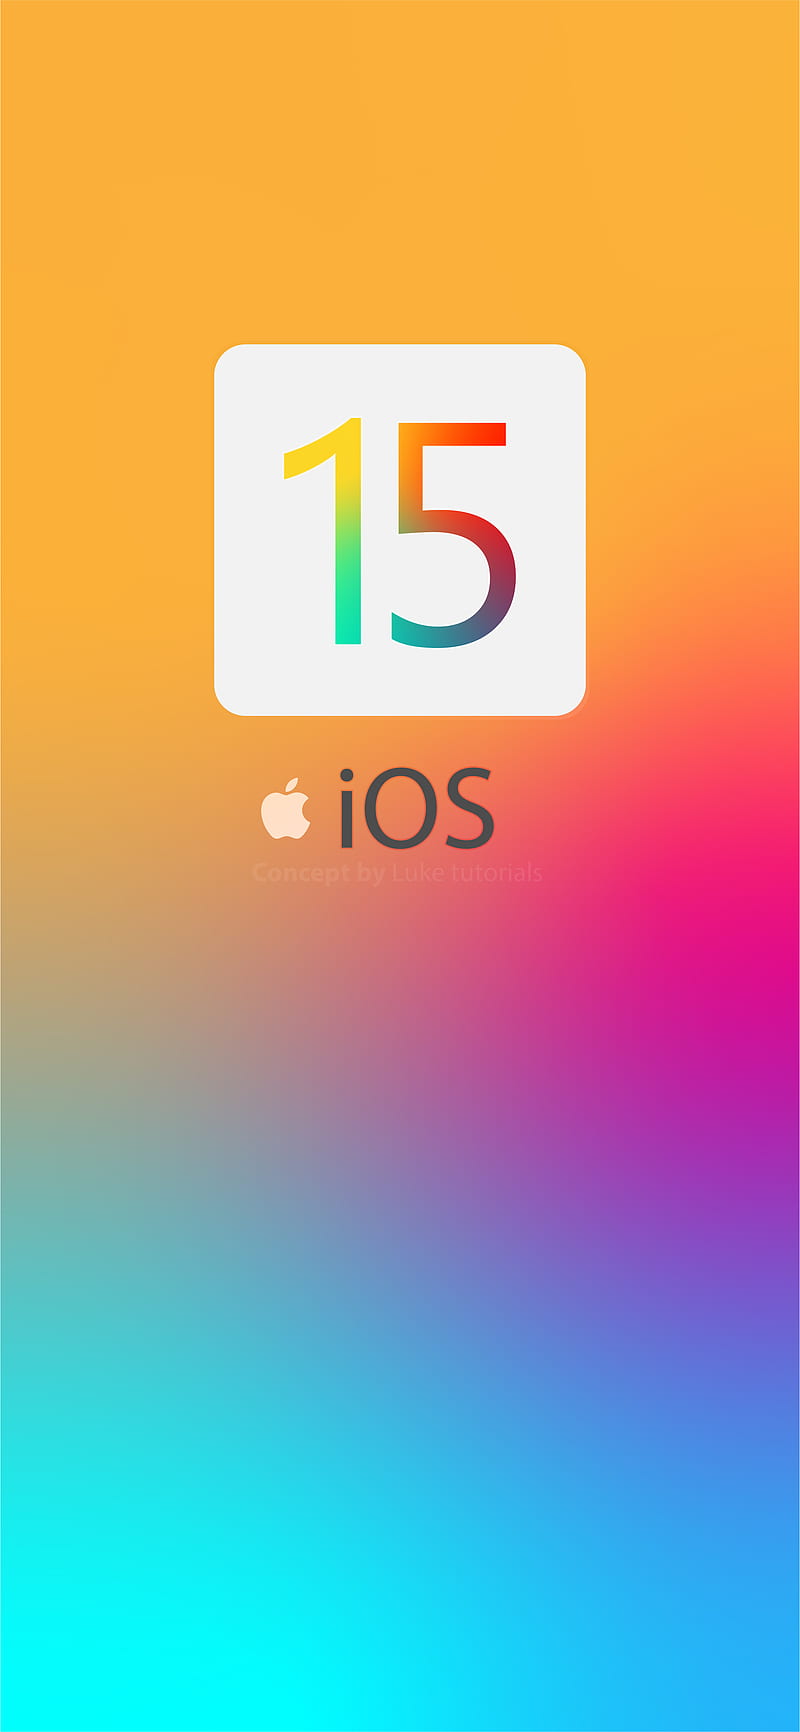 iOS 15 Wallpapers - Top Những Hình Ảnh Đẹp